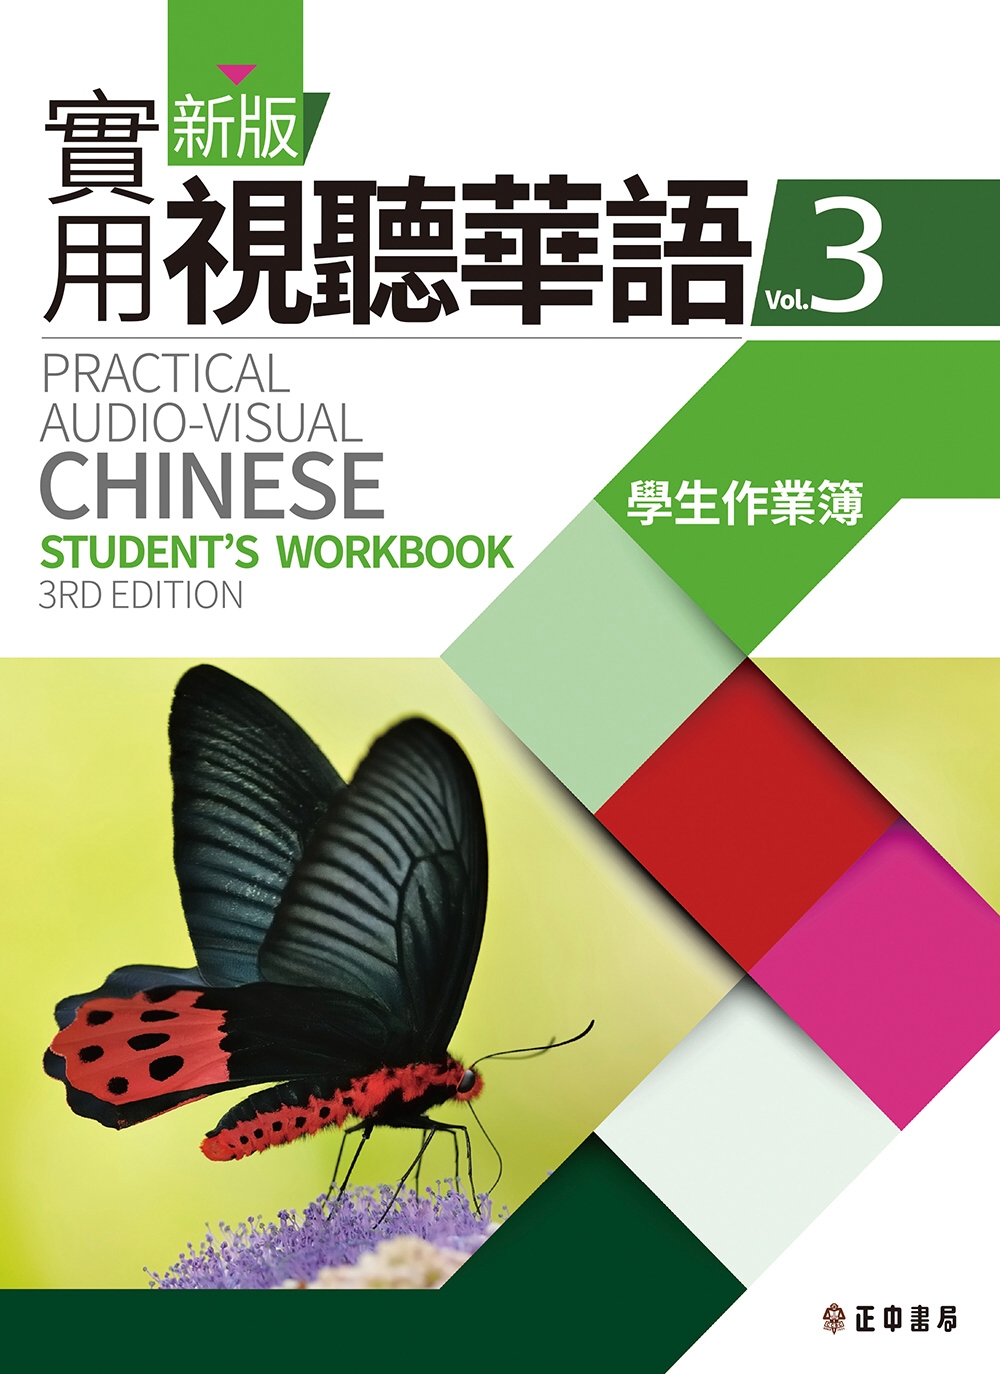 新版實用視聽華語3 學生作業簿(第三版)